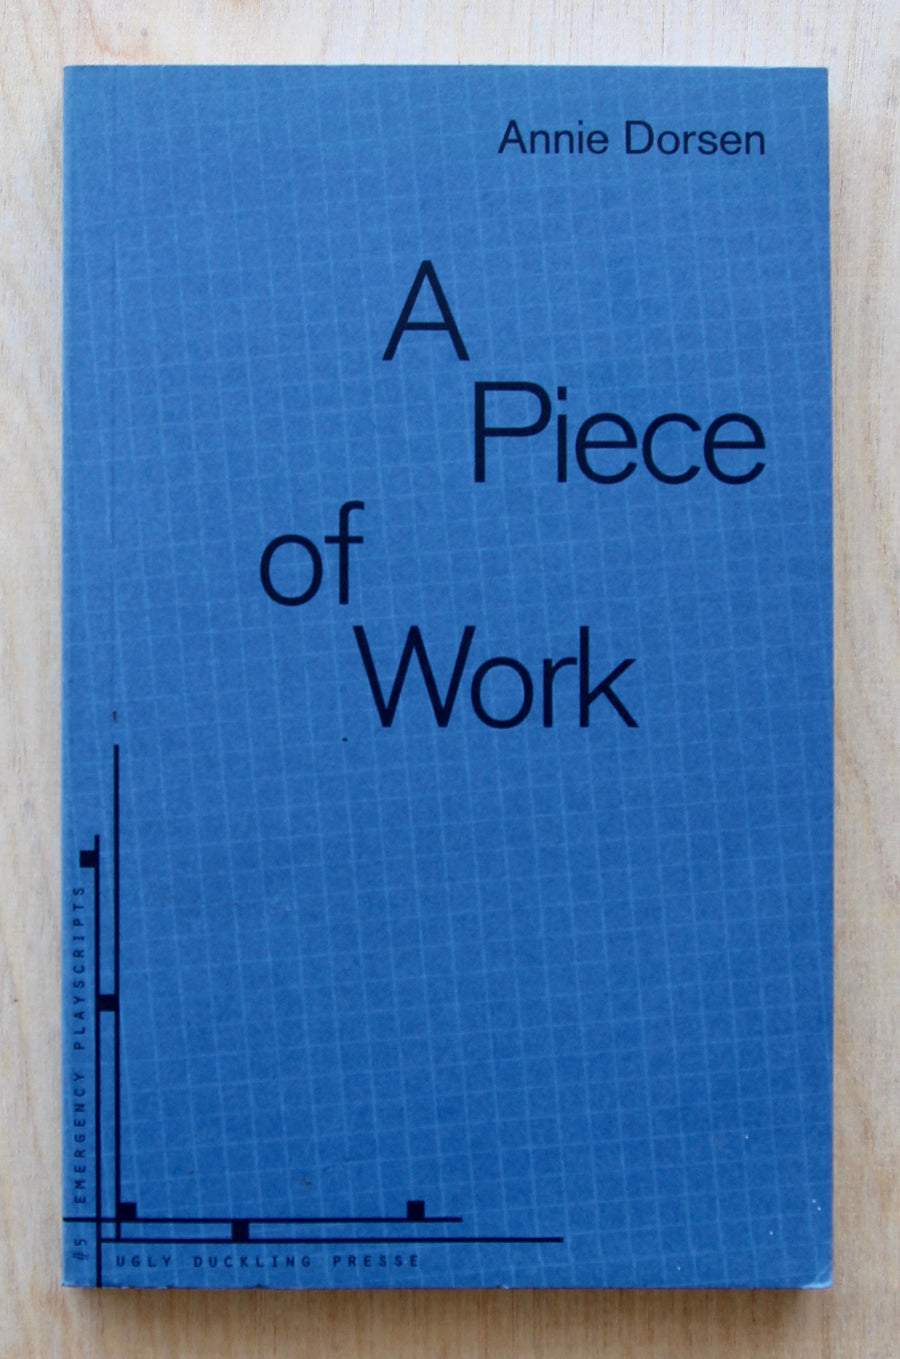 A PIECE OF WORK by Annie Dorsen